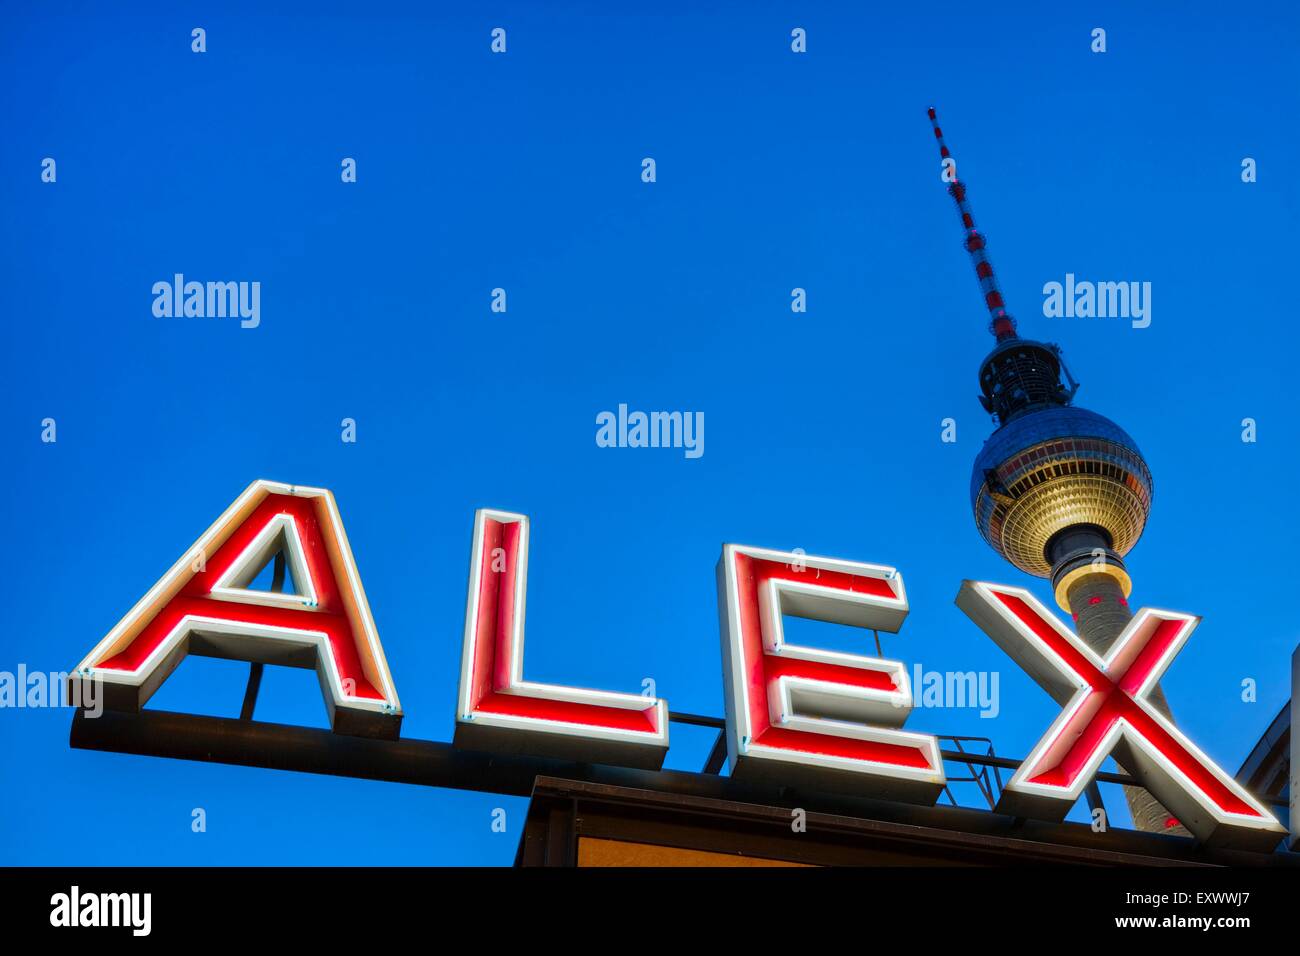 Tour de transmission de radio Alex, Alexanderplatz, Berlin, Germany, Europe Banque D'Images